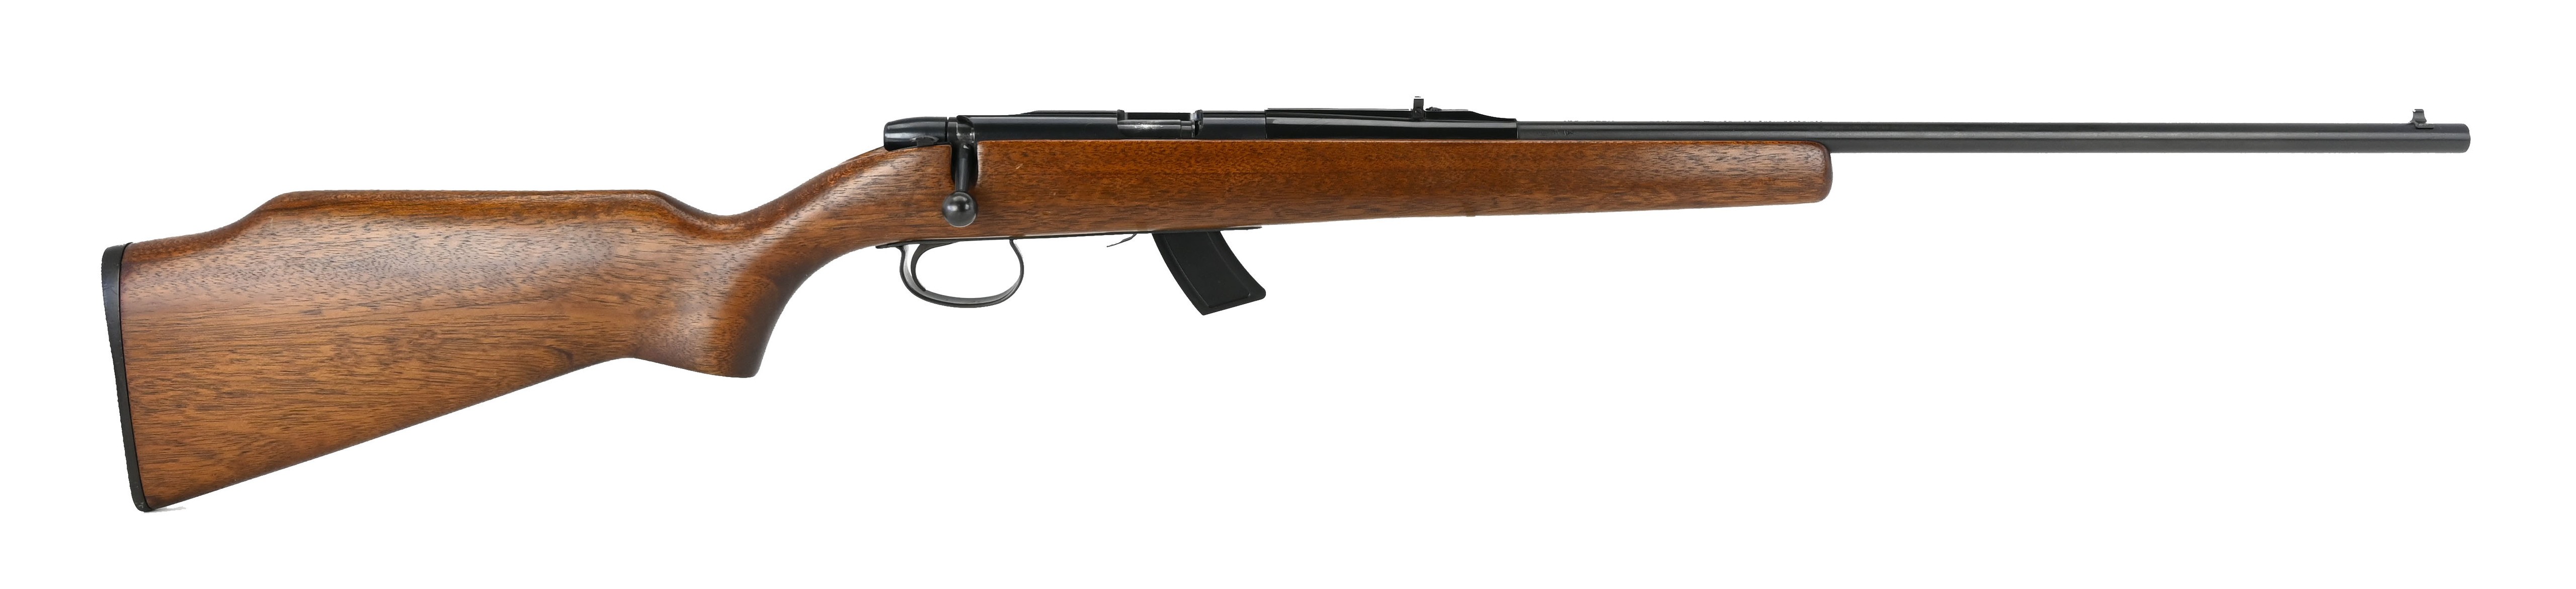 remington-581-22-s-l-lr-caliber-rifle-for-sale